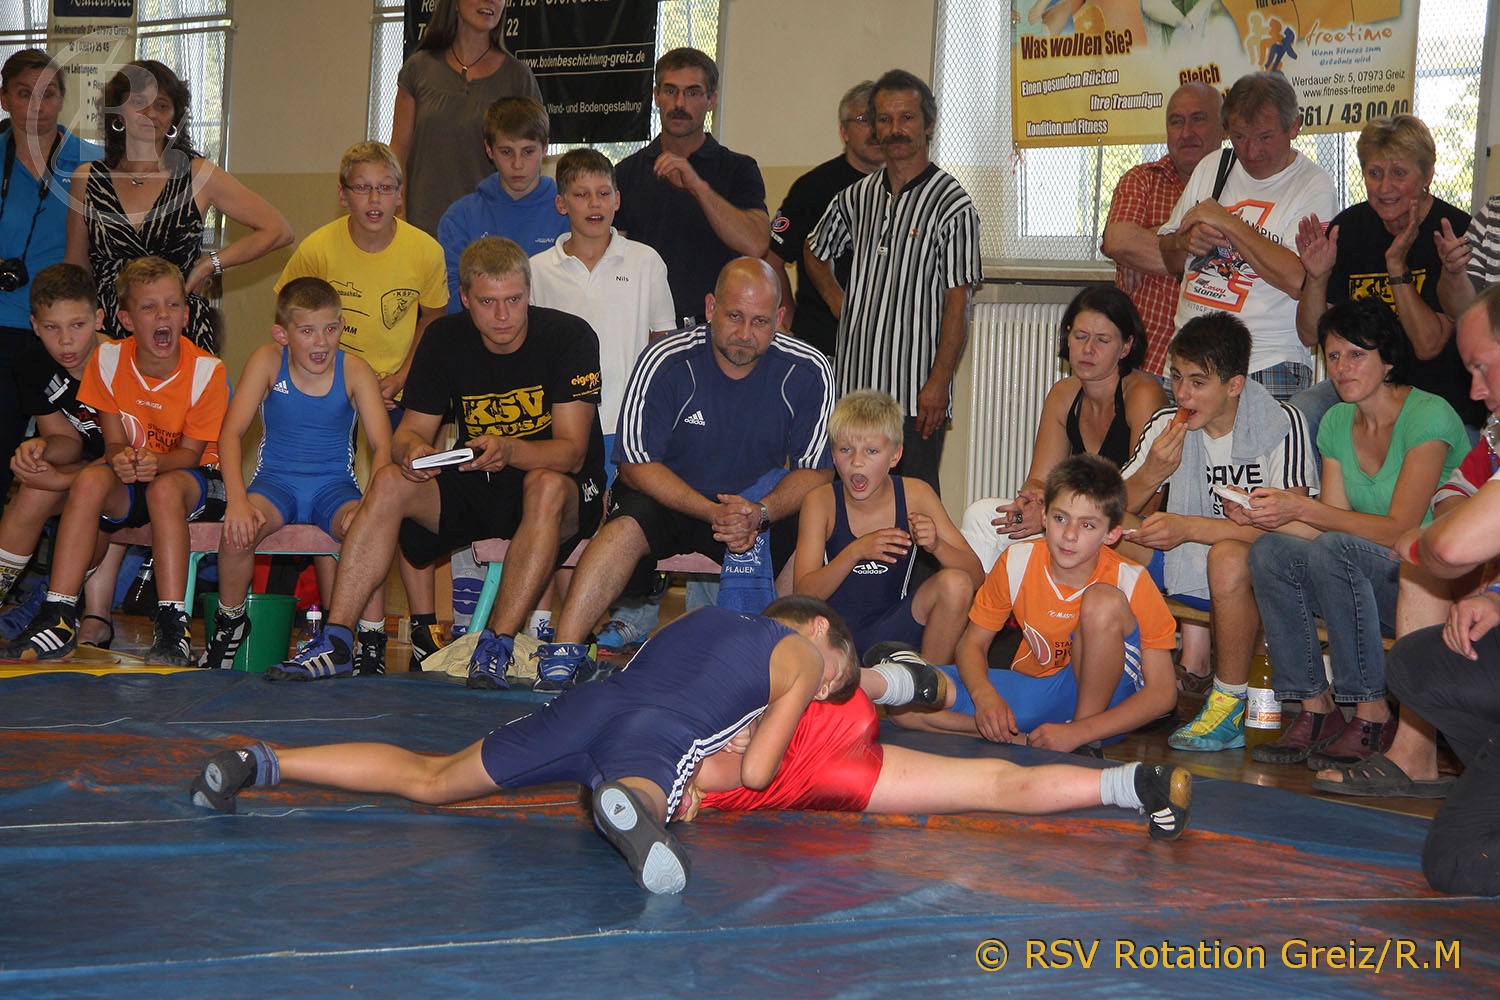 Jugendmannschaft des RSV Rotation Greiz gewann mit 6:0 Punkten